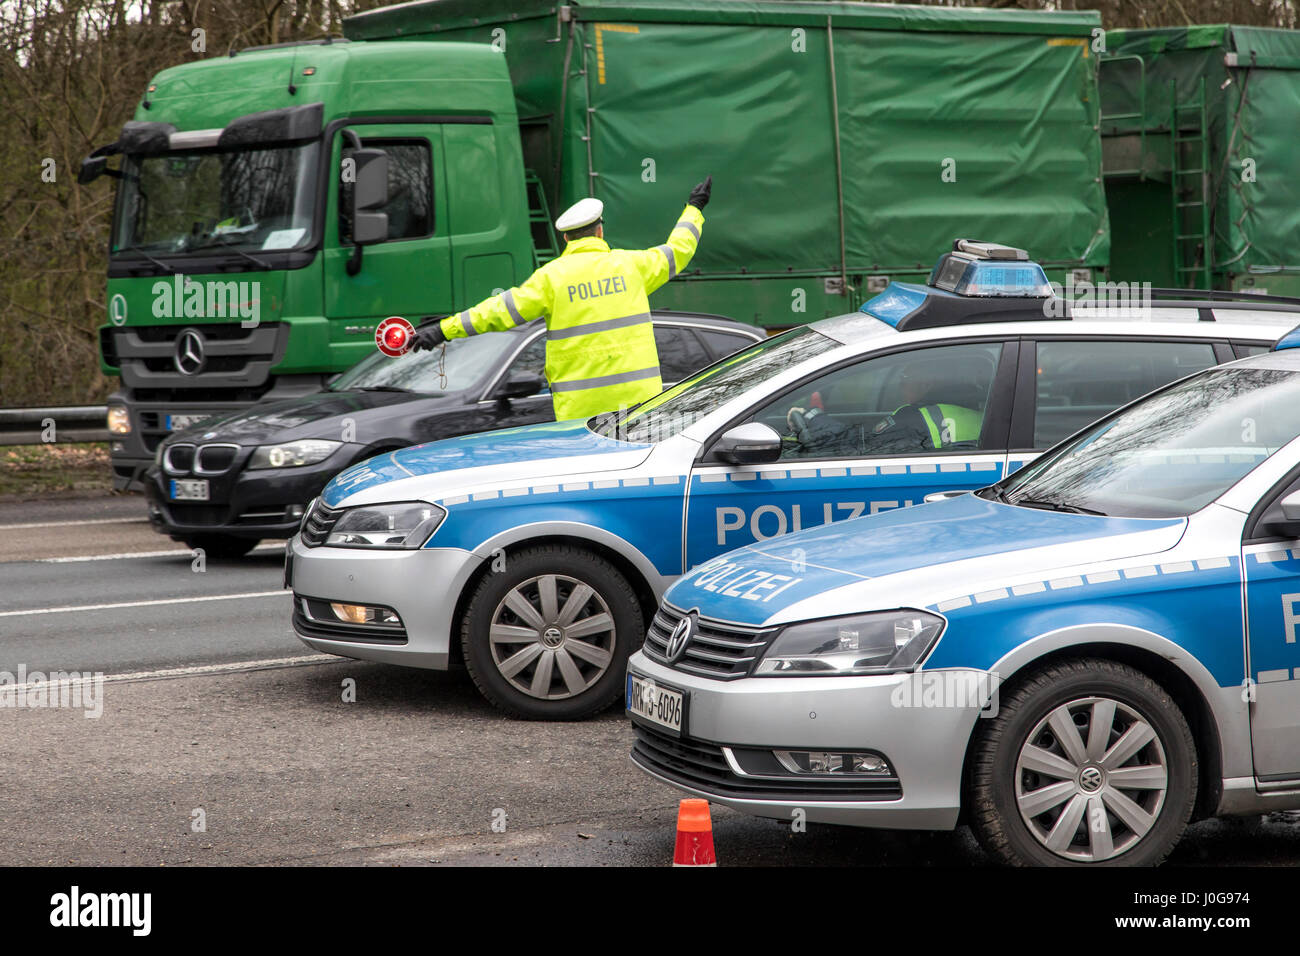 El control policial de los camiones, sobre la Autopista A555 en Colonia, Alemania, junto con la aduana, la bolsa y el TÜV, Foto de stock